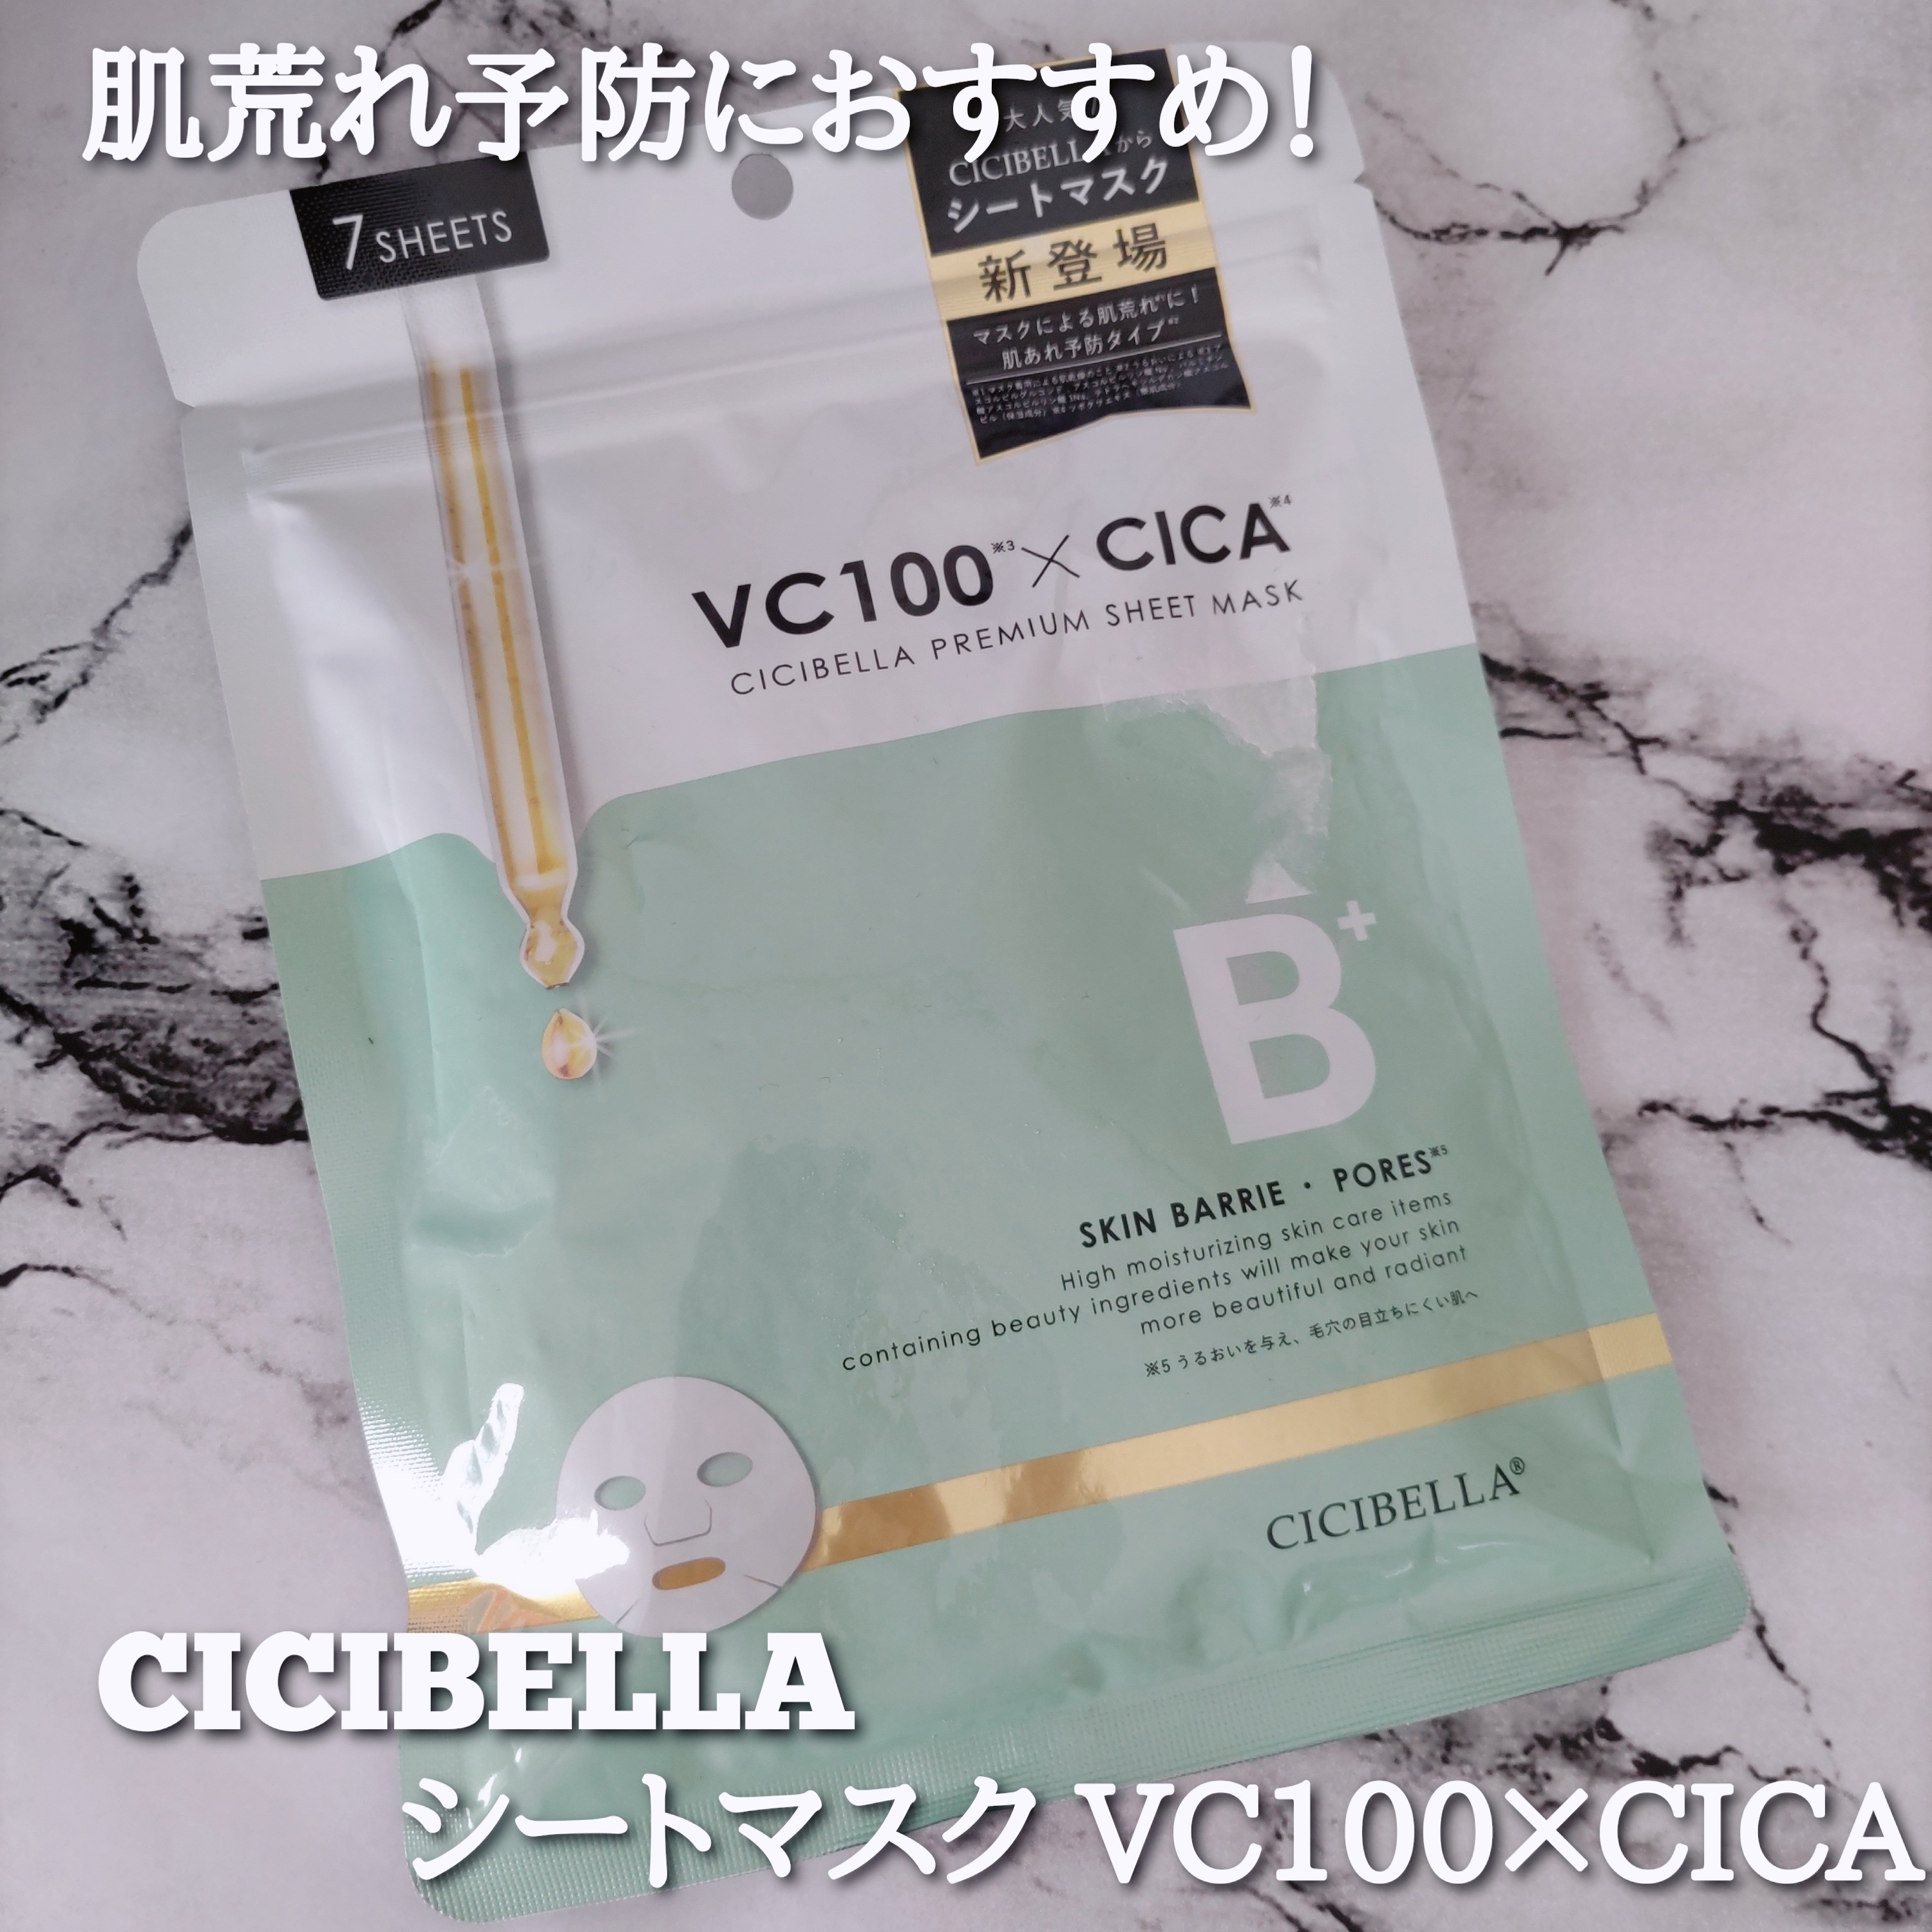 CICIBELLA シートマスク VC100×CICAを使ったYuKaRi♡さんのクチコミ画像1